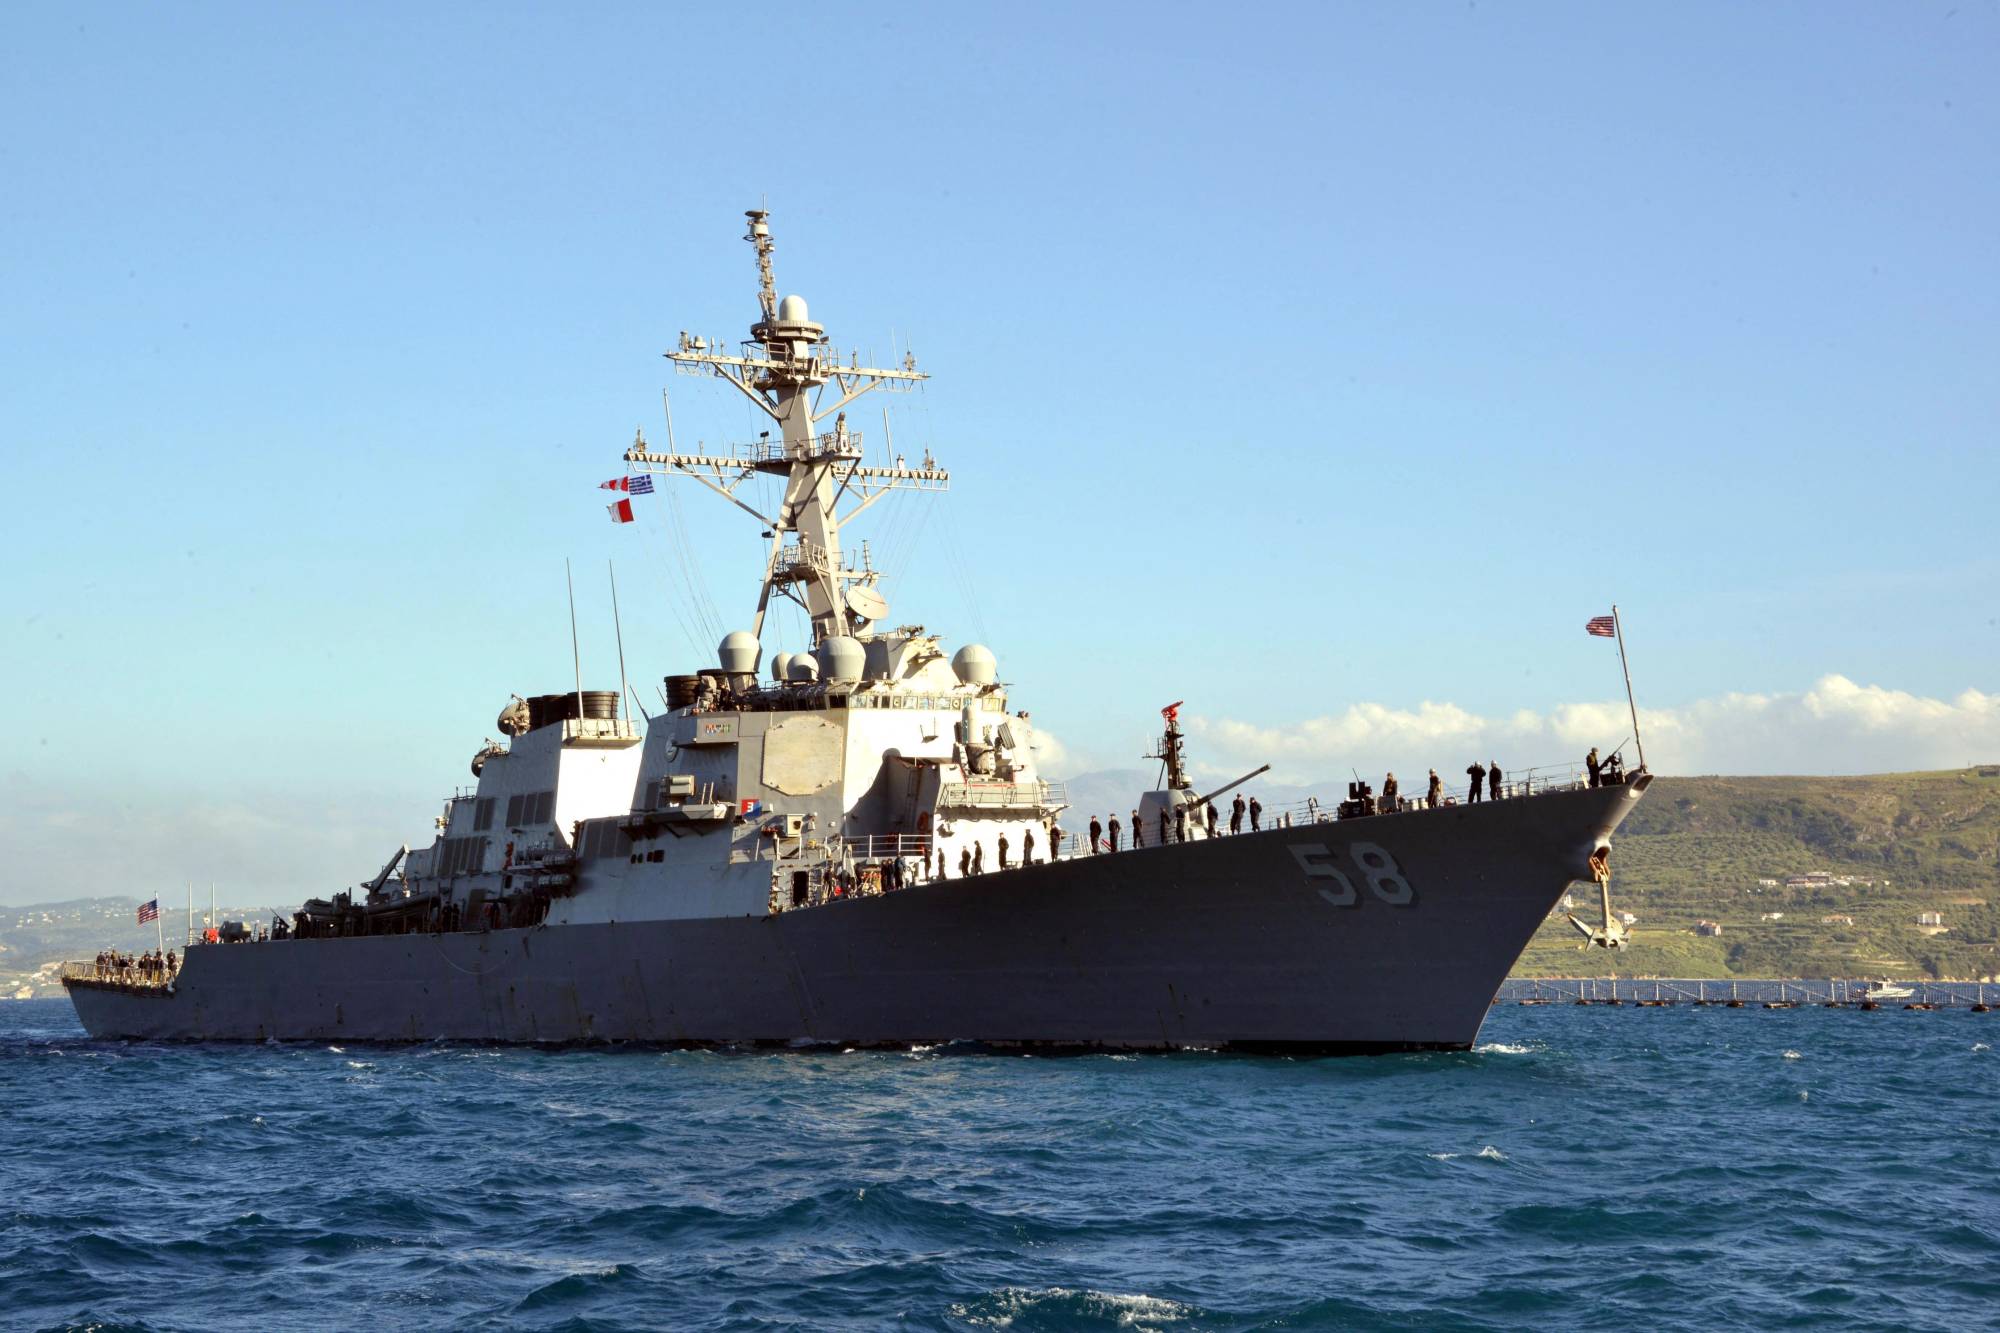 صاروخ حوثي يستهدف سفينة أمريكية والقيادة المركزية الأميركية تصدر بياناً